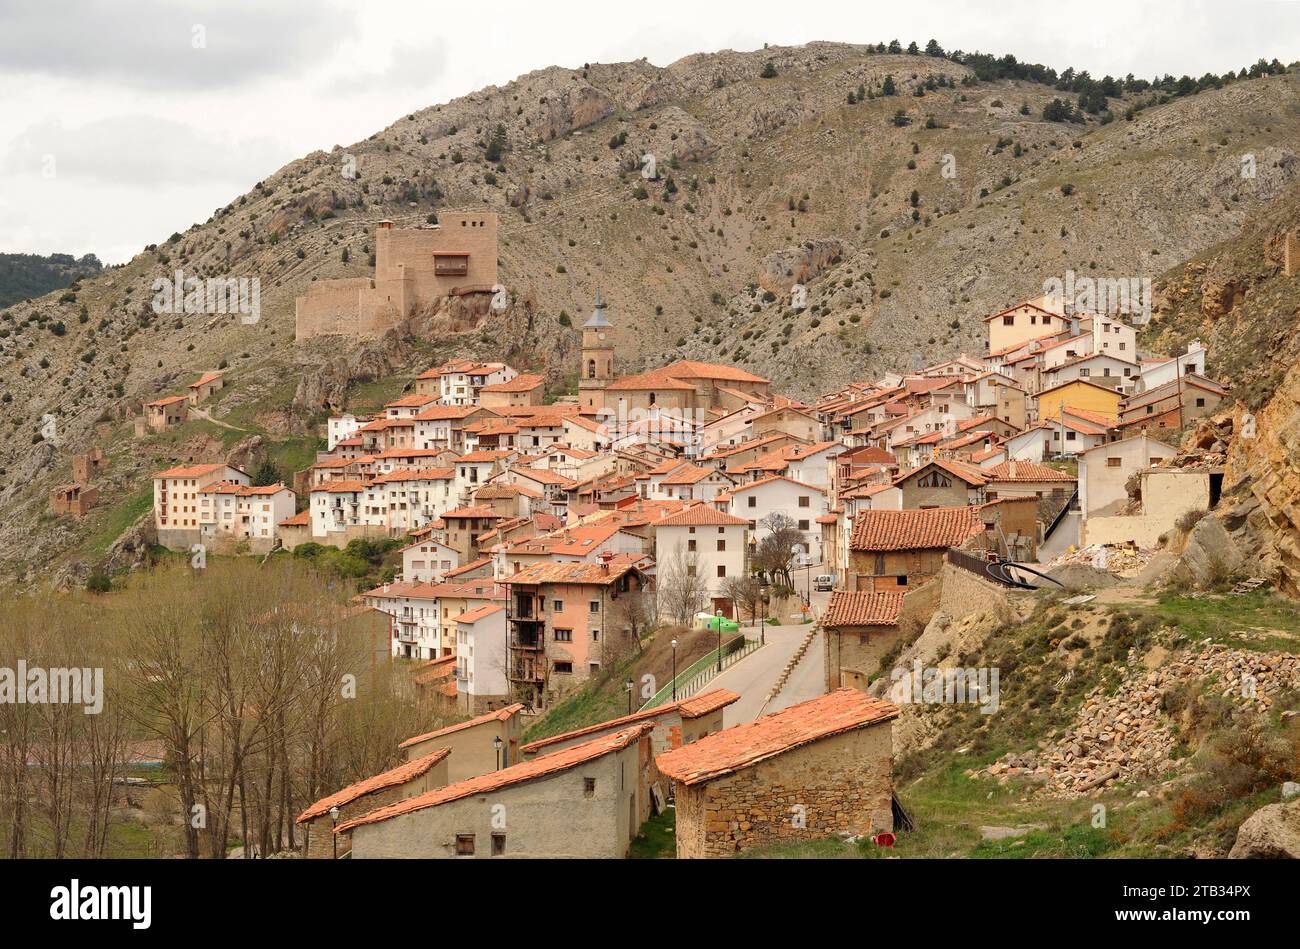 Alcala de la Selva, Gudar-Javalambre region. Teruel province, Aragon, Spain. Stock Photo